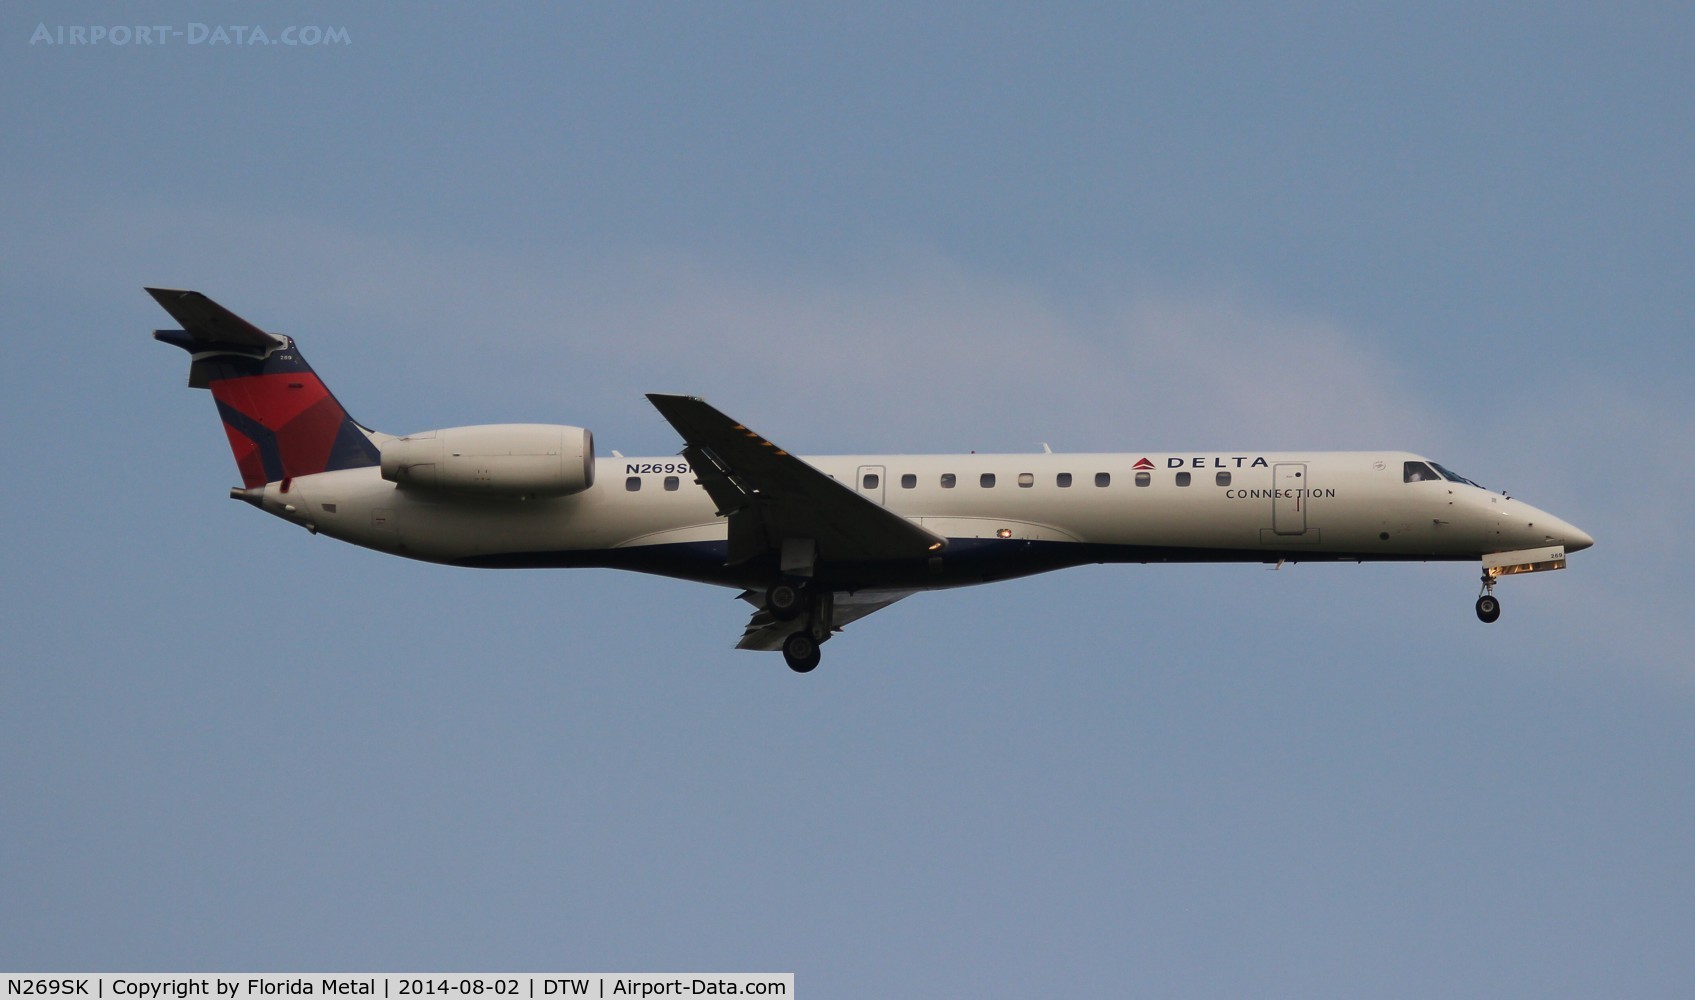 N269SK, 2000 Embraer EMB-145LR C/N 145293, Delta Connection